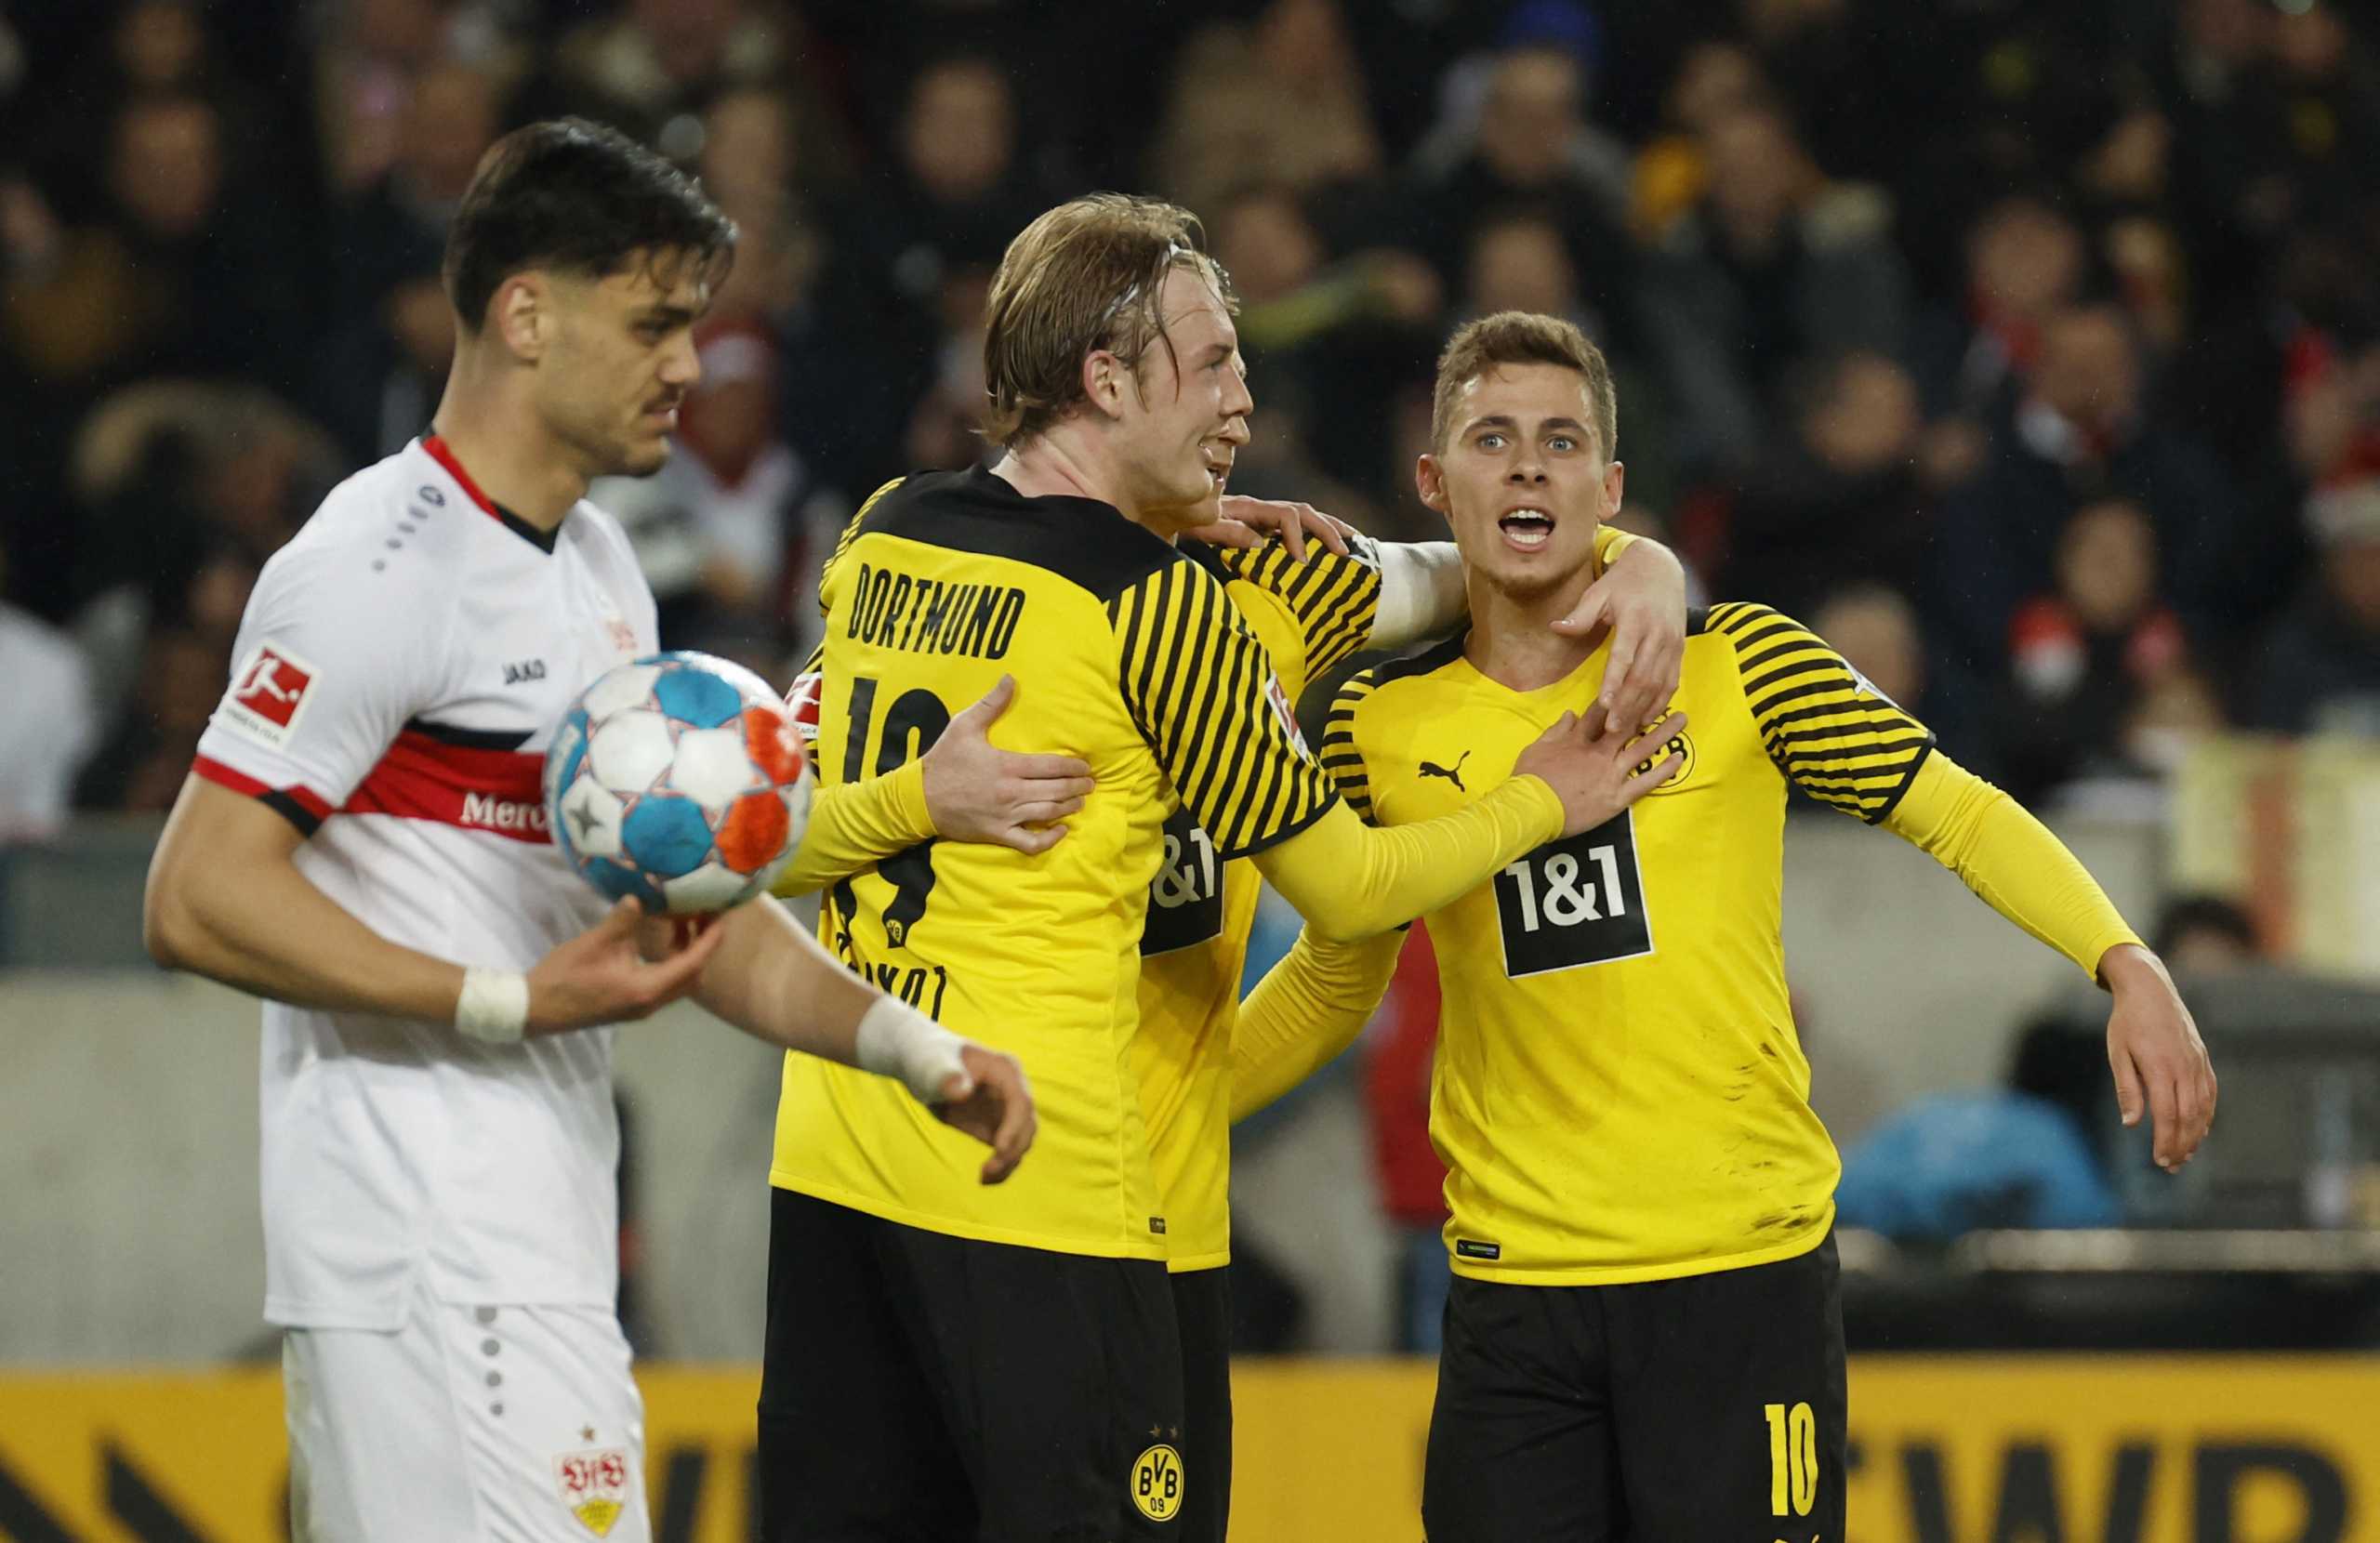 Bundesliga: Η Ντόρτμουντ πέρασε με 2-0 από τη Στουτγκάρδη του Μαυροπάνου και μείωσε τη διαφορά από την Μπάγερν Μονάχου